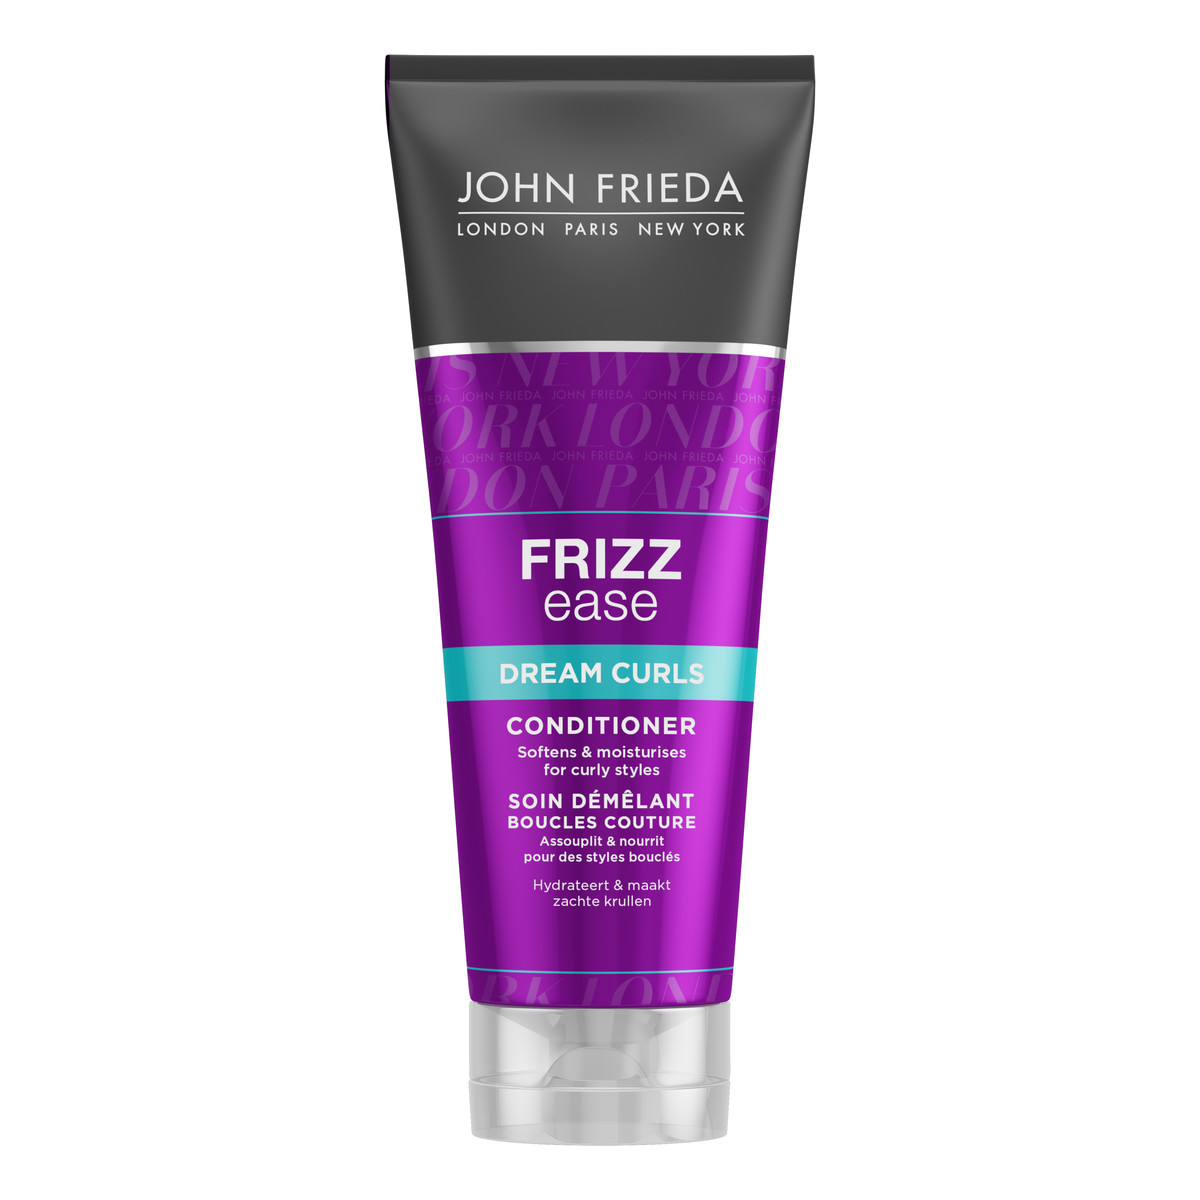 John Frieda Dream Curls Frizz Ease Odżywka Nadająca Skręt Włosom 250ml